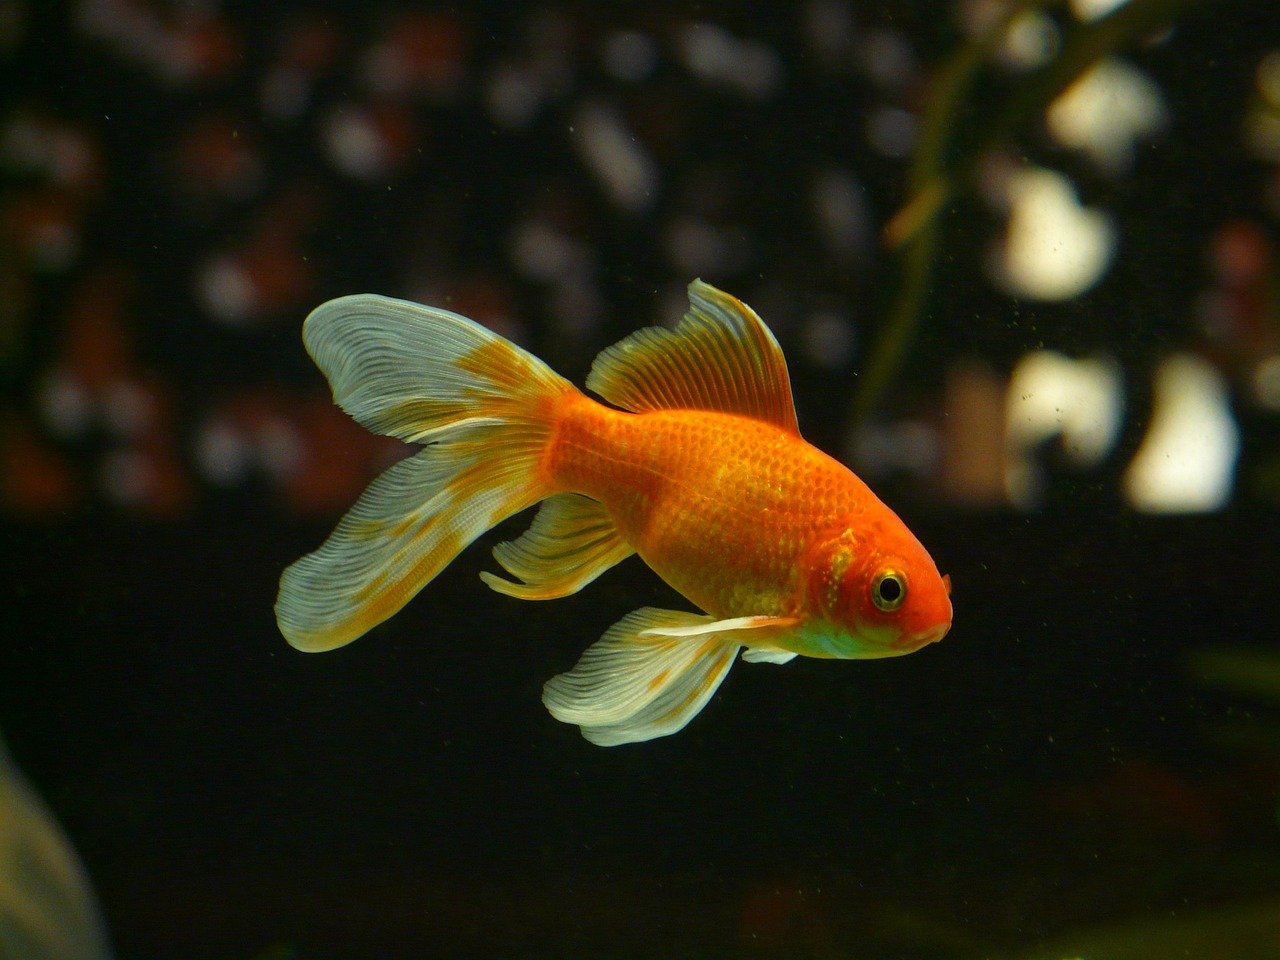 Durée de vie des poissons rouges